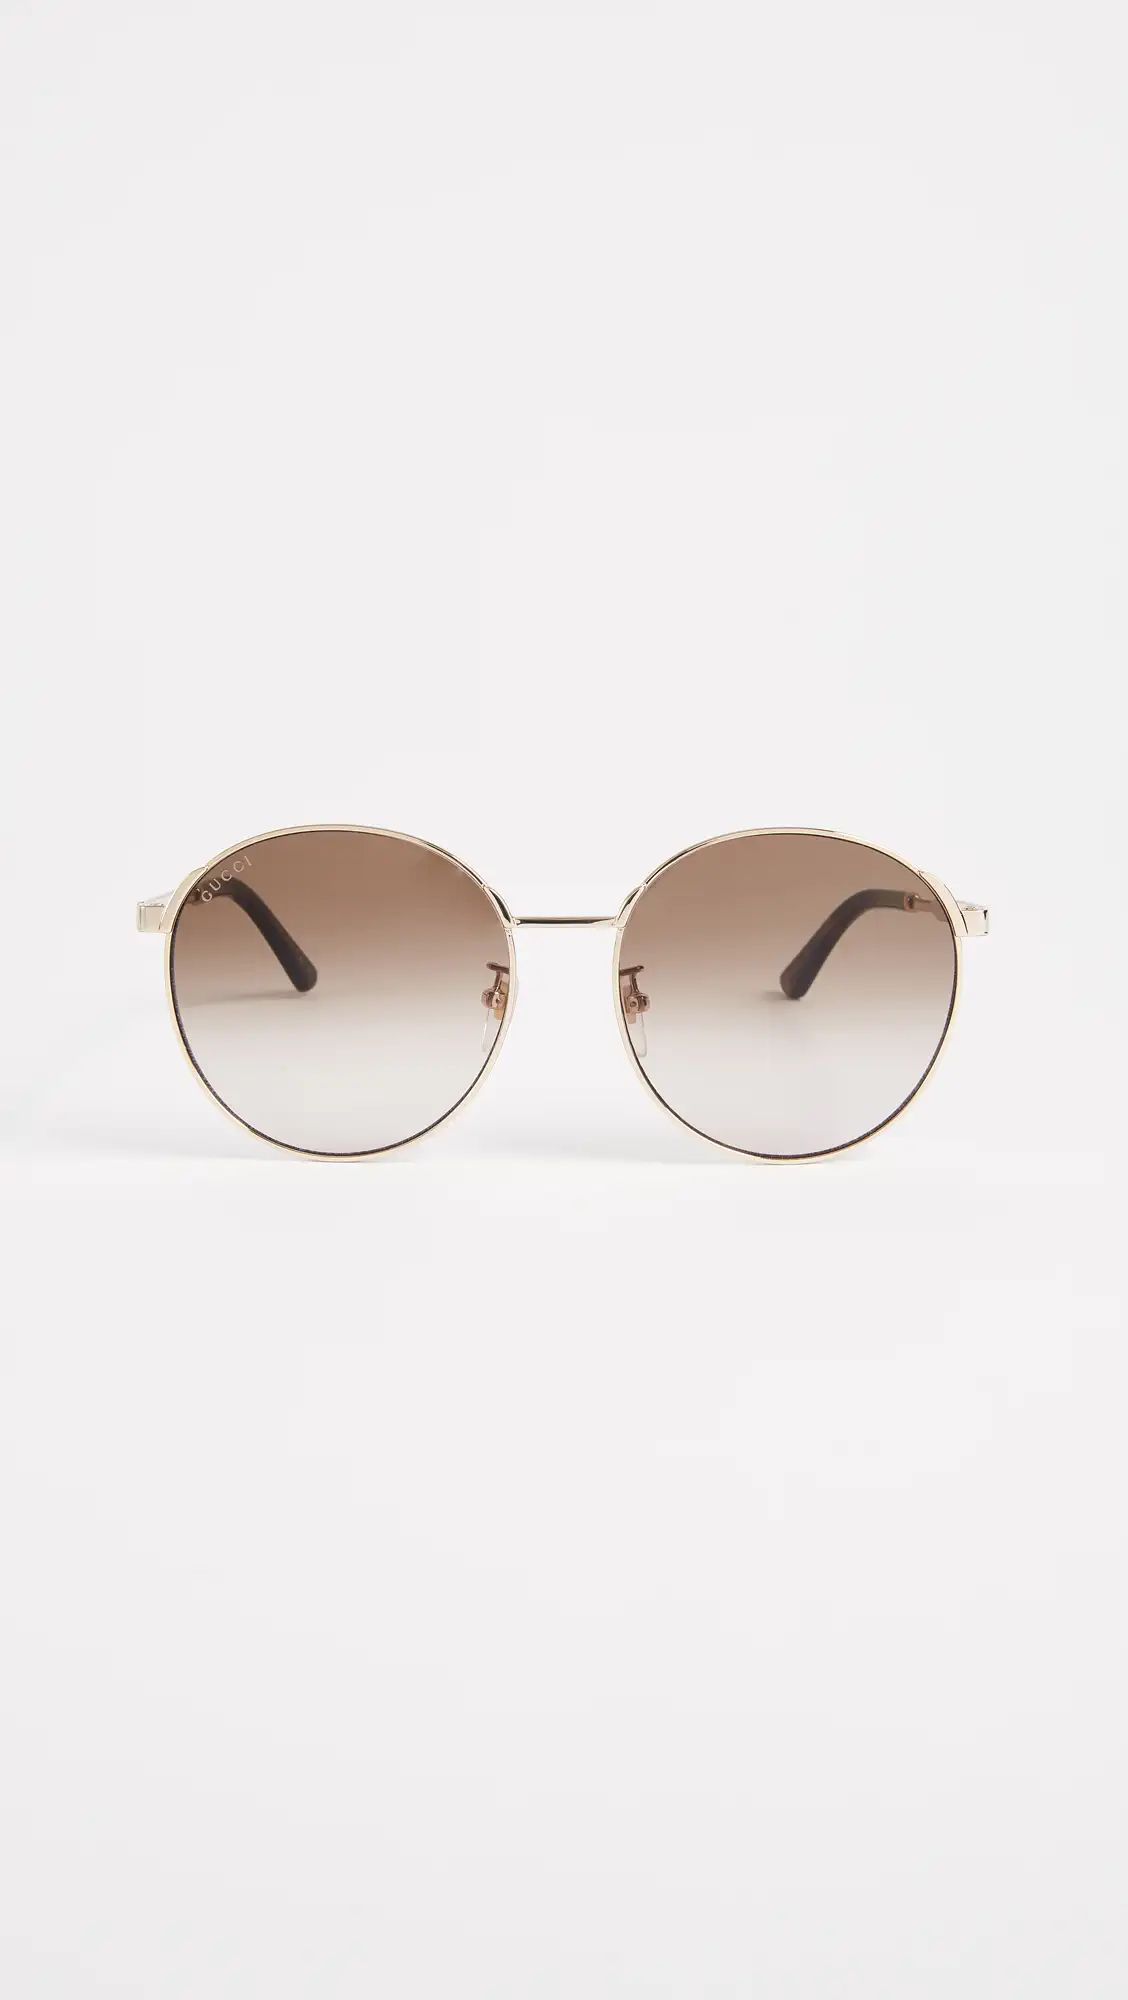 Sensual Romanticism Round Sunglasses | Shopbop